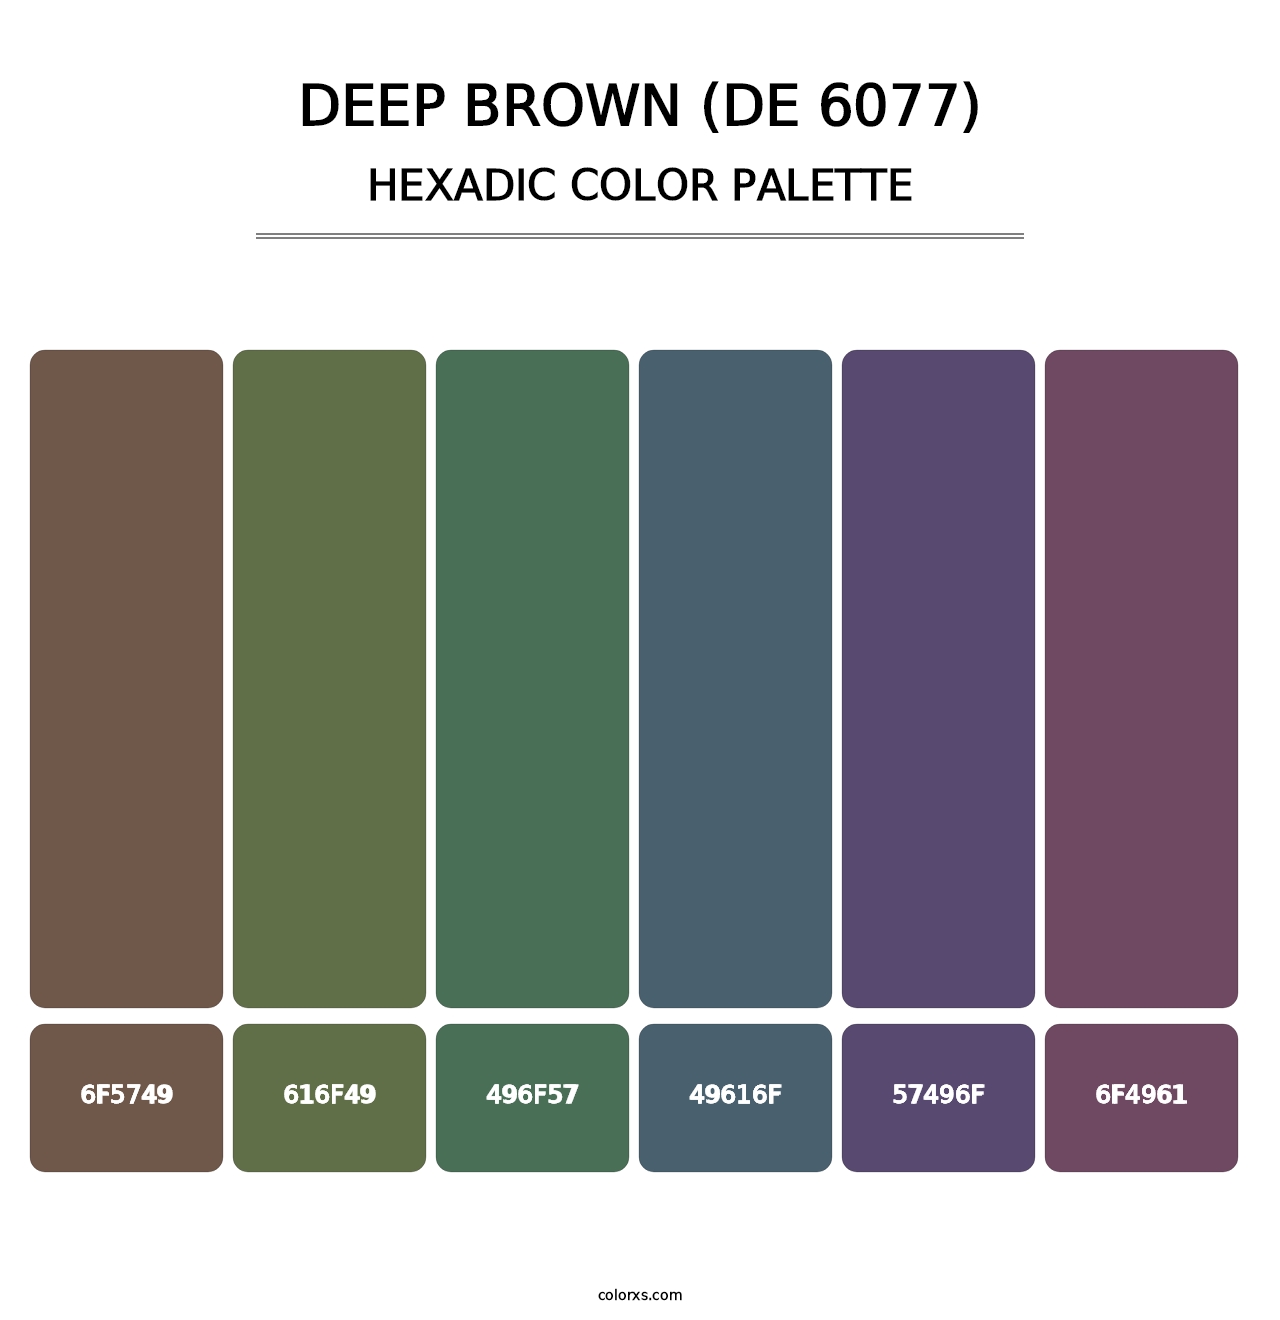 Deep Brown (DE 6077) - Hexadic Color Palette